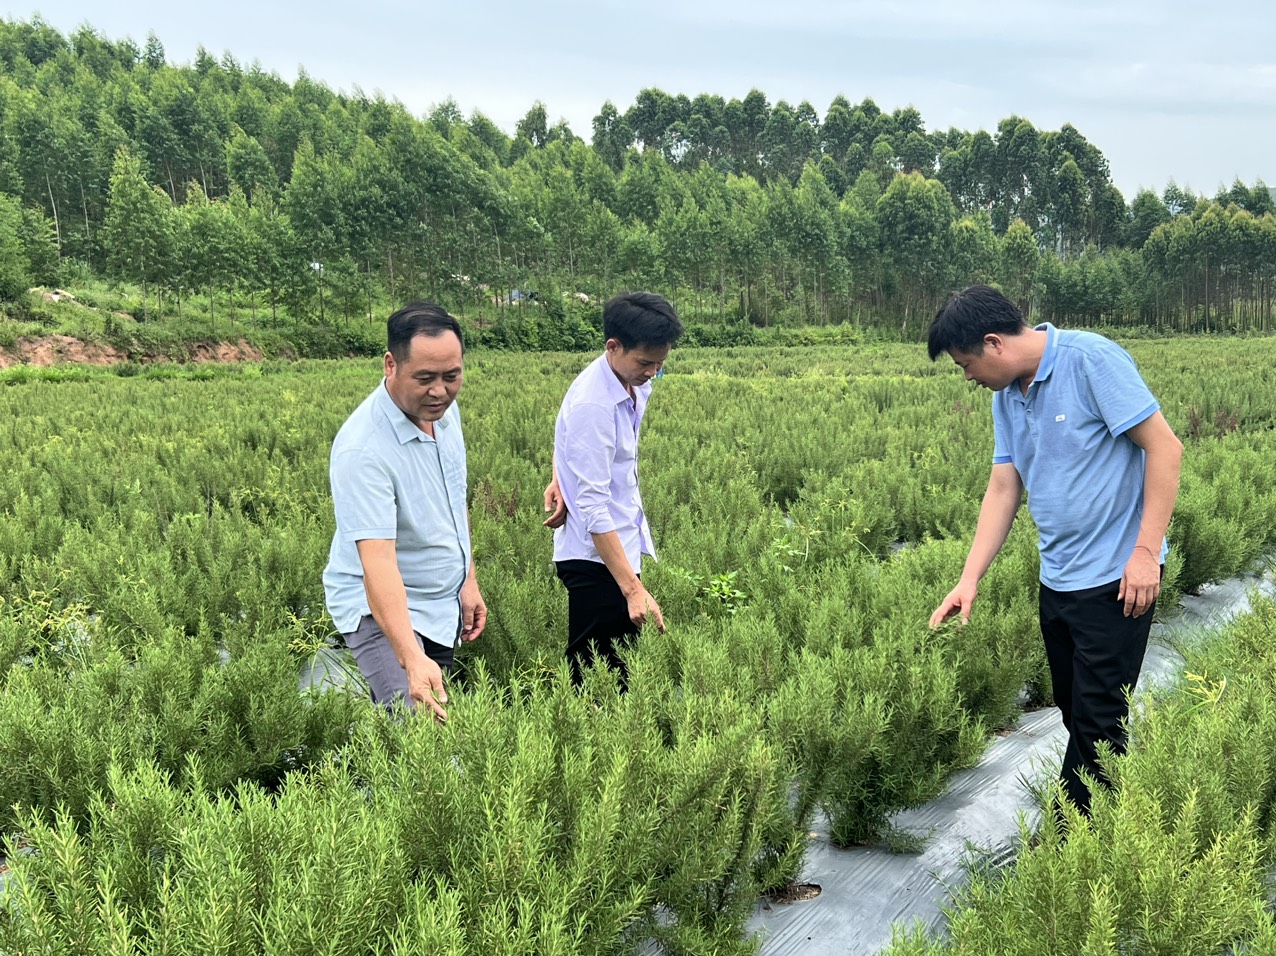 Hương thảo là cây gì mà một nông dân Bắc Giang trồng rồi cắt cành, lá bán hết cho doanh nghiệp, thu lãi cao? - Ảnh 1.